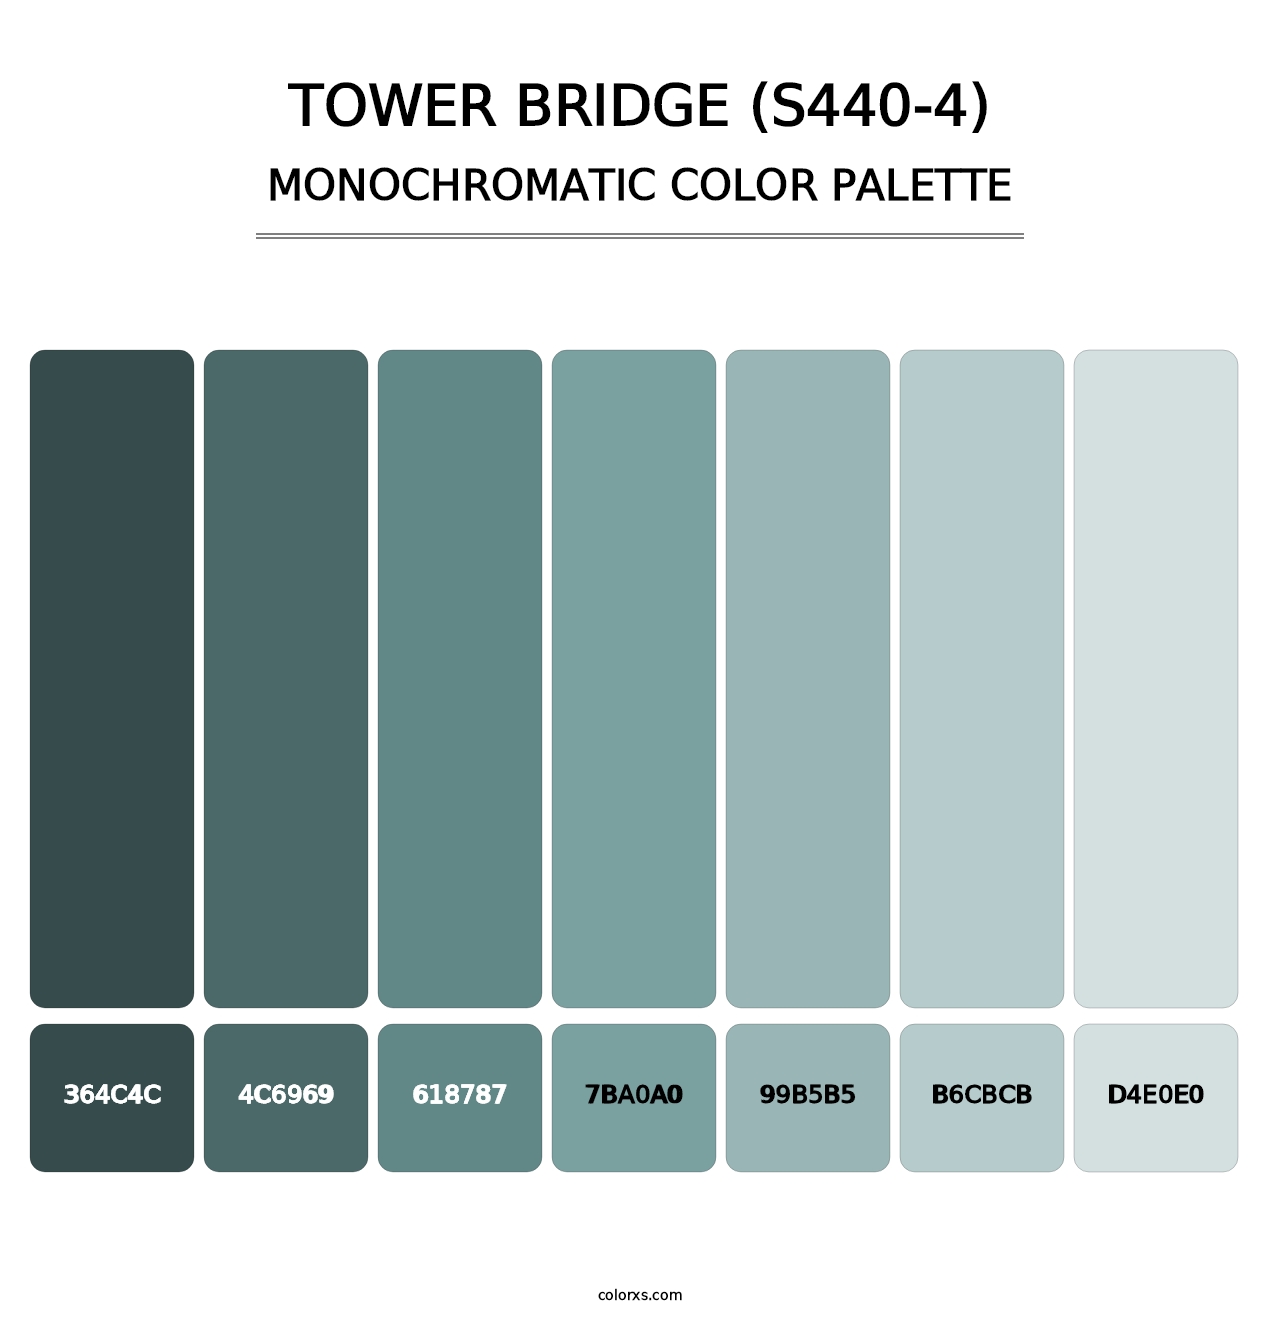 Tower Bridge (S440-4) - Monochromatic Color Palette